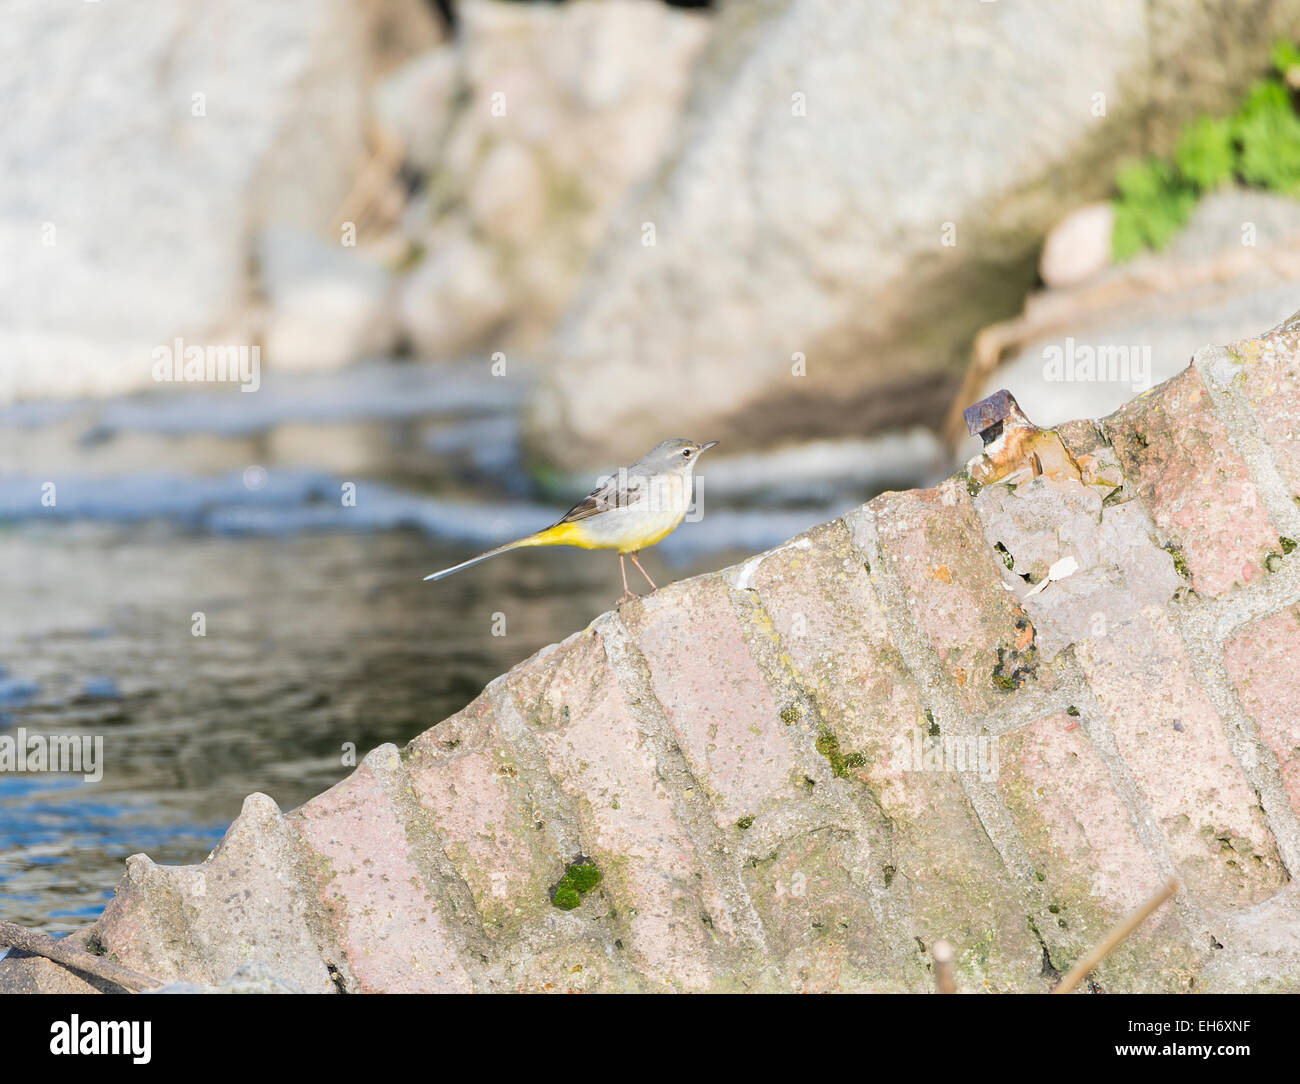 Motacilla cinerea, Grey wagtail looking for food Stock Photo